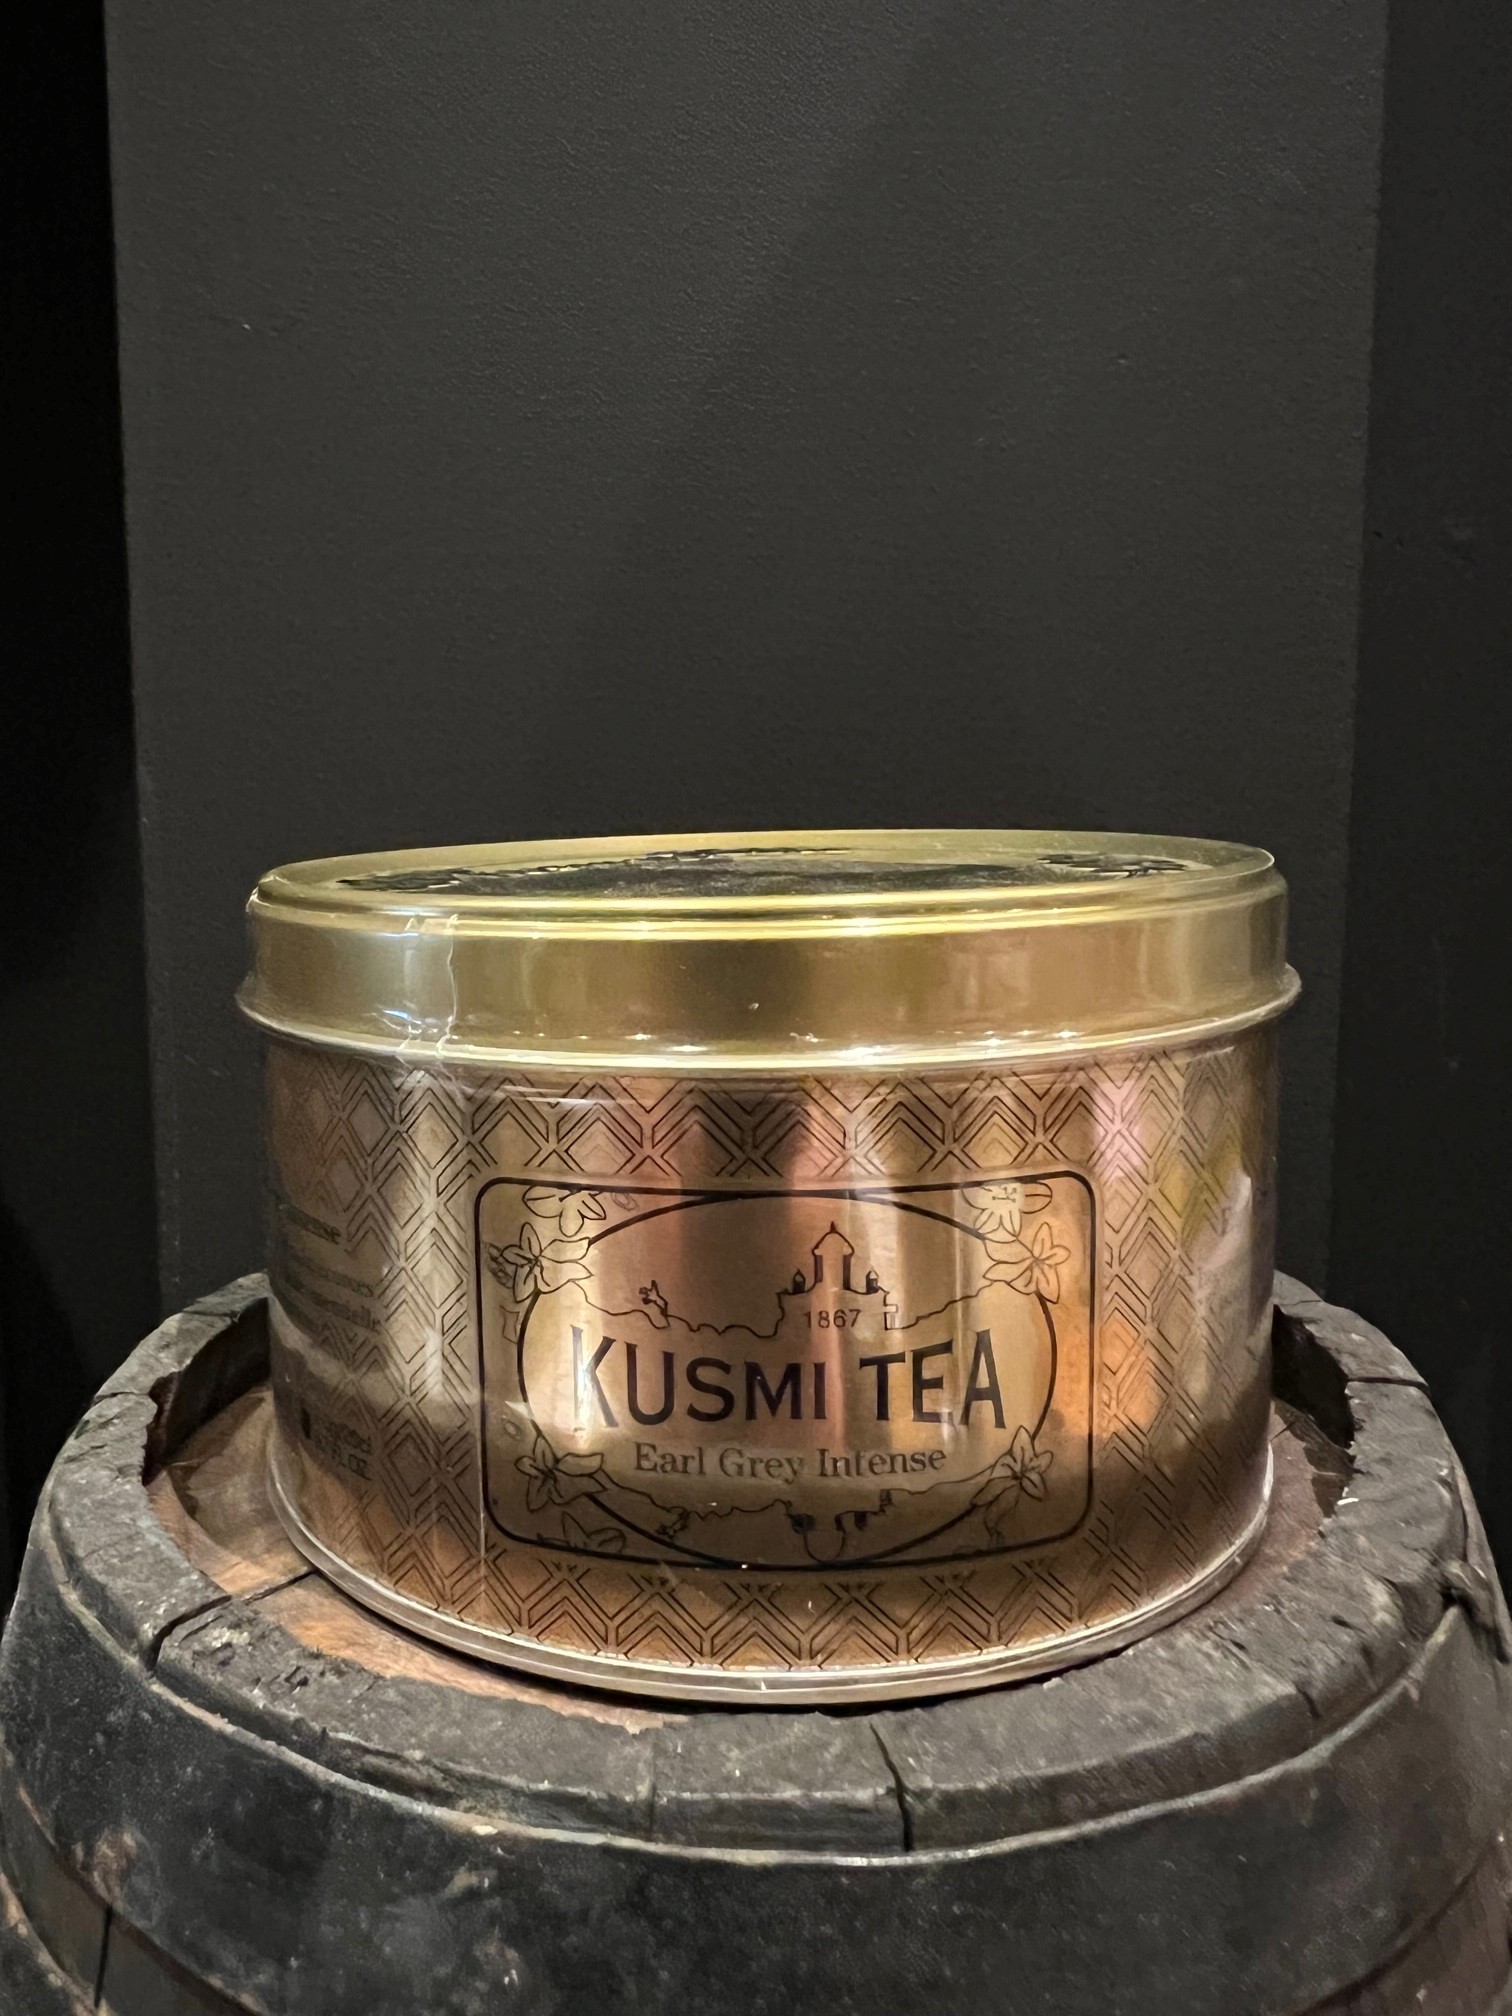 Kusmi Tea Earl Grey Intense Goud blik 125 gram losse thee – Lalie